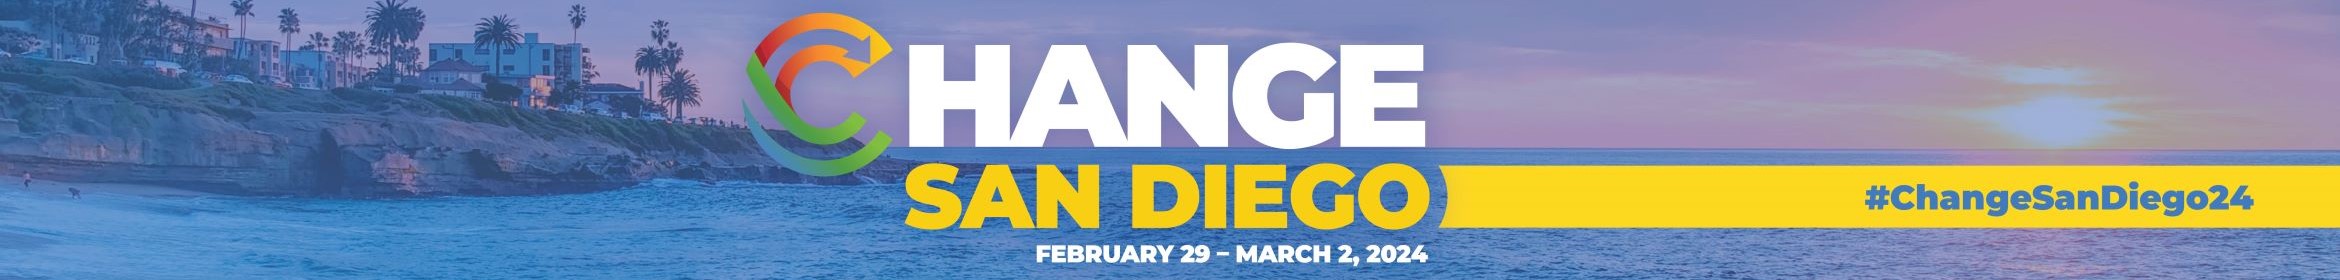 Change San Diego Main banner